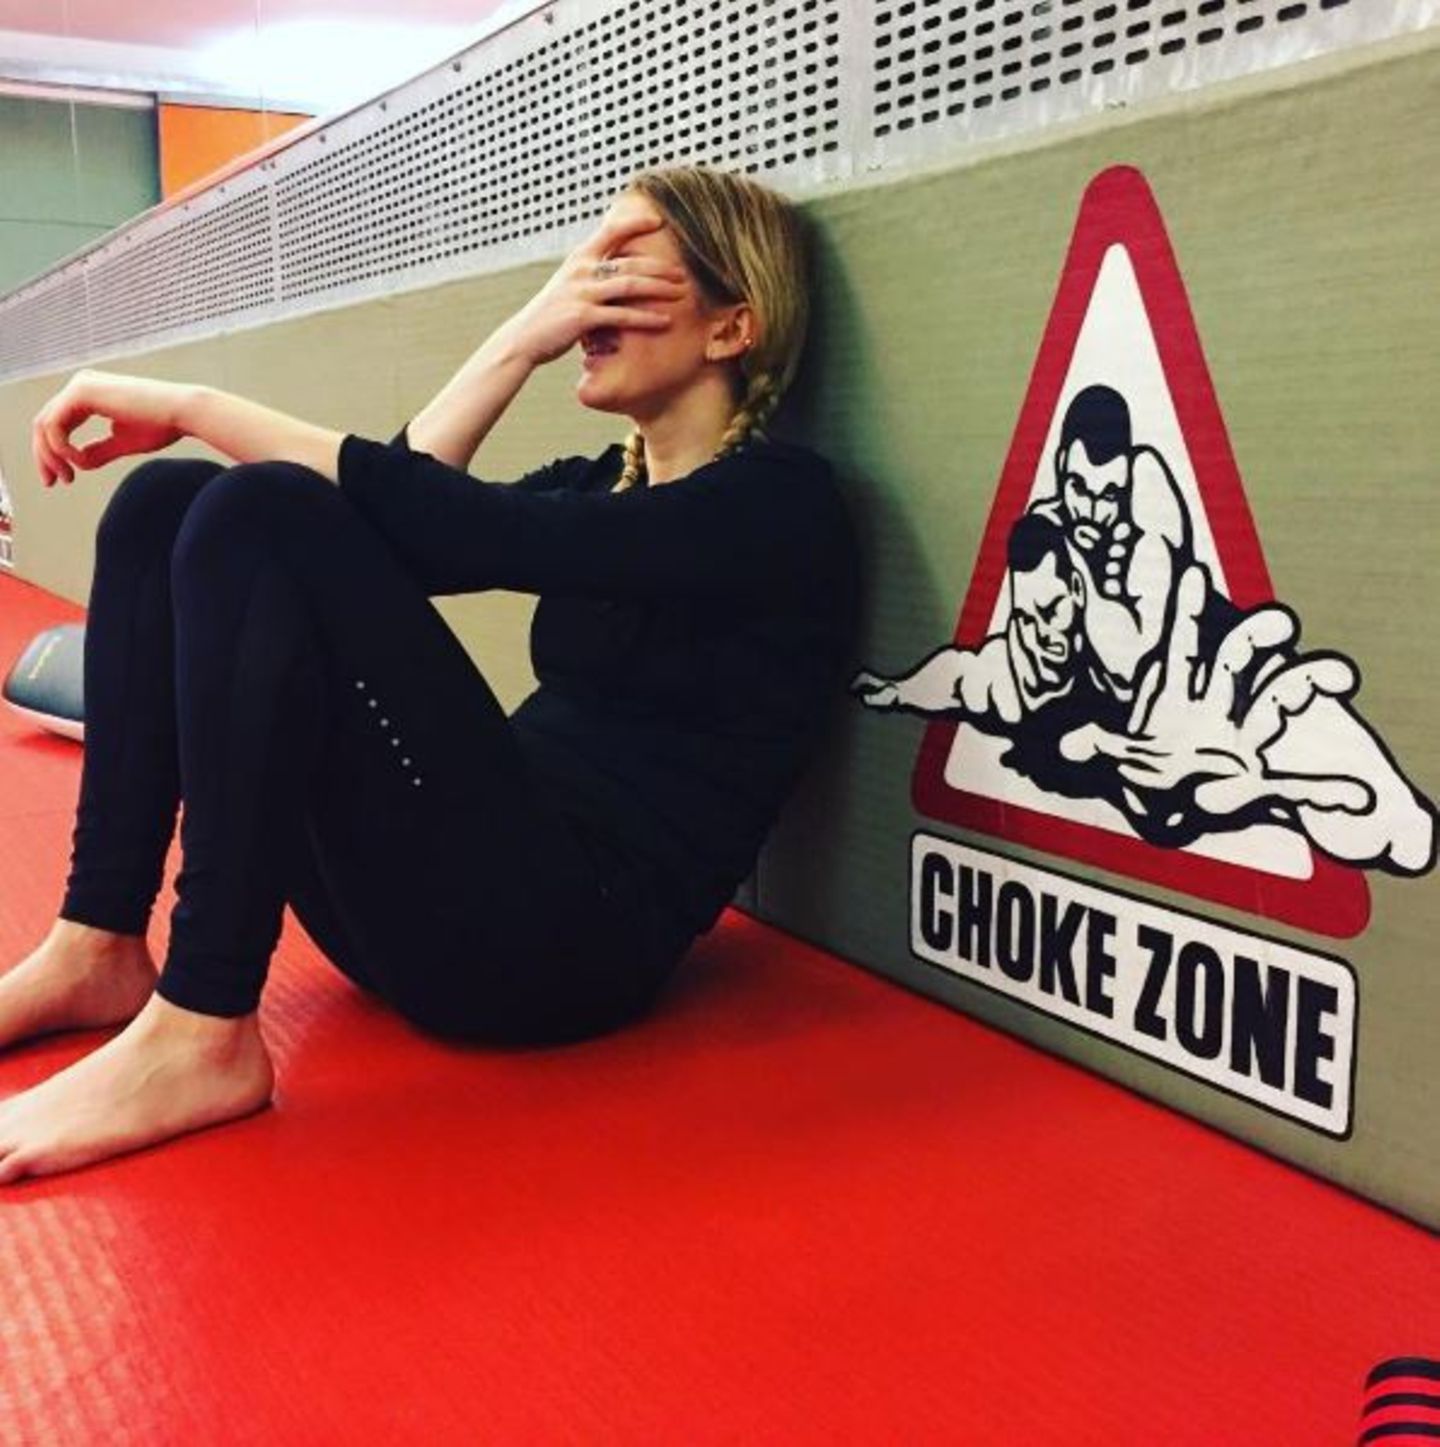 November 2016   Ellie Goulding hat ein hartes Training hinter sich und verschnauft etwas, aber ob ihr klar ist, dass sie sich in der "Würge-Zone" befindet?